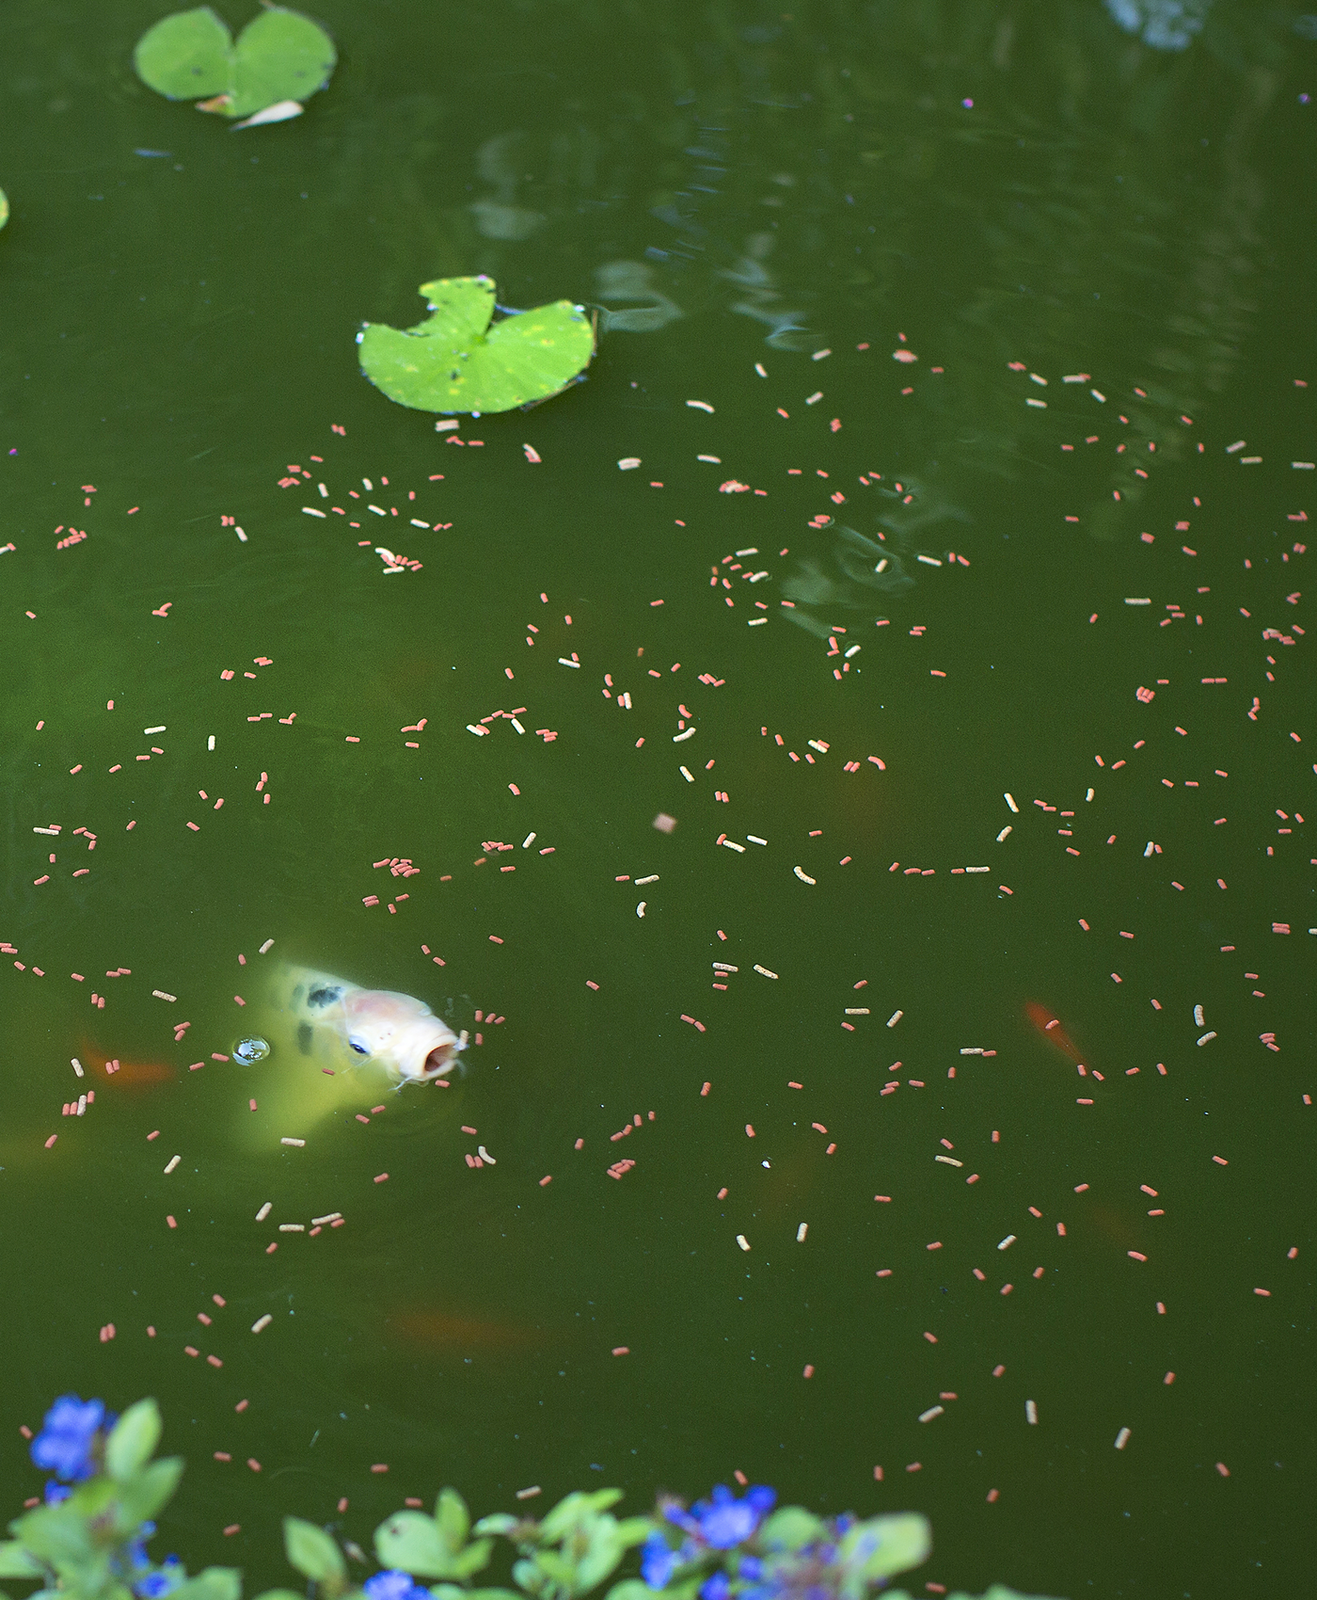 Un poisson de bassin aquatique mange des granulés